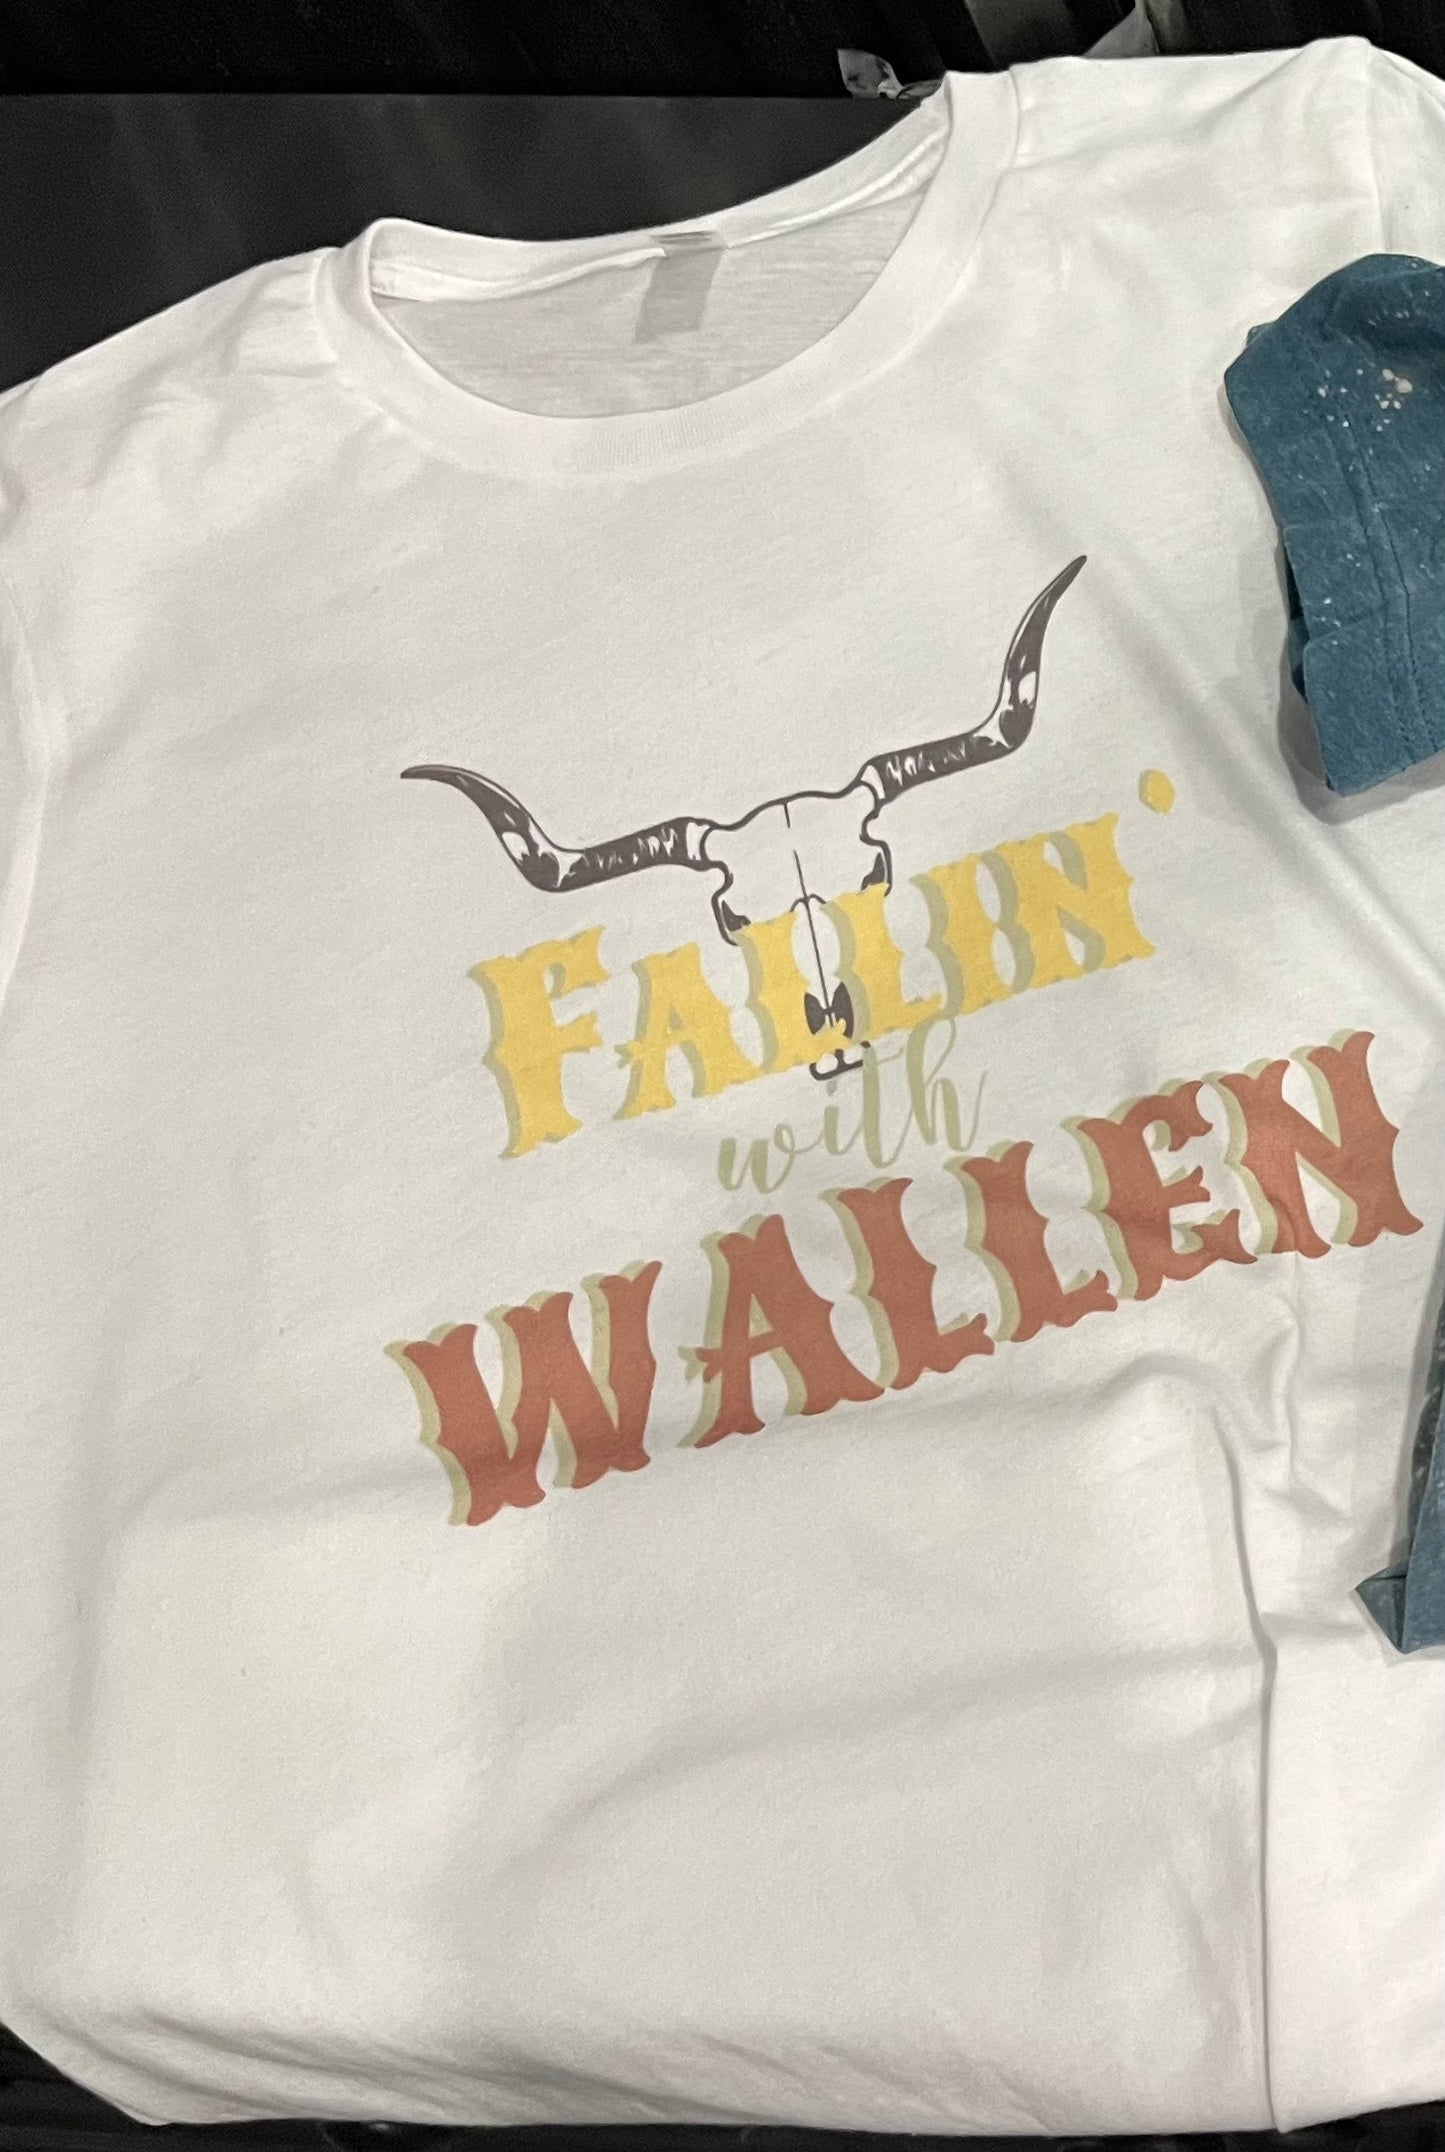 Fallin with Wallen